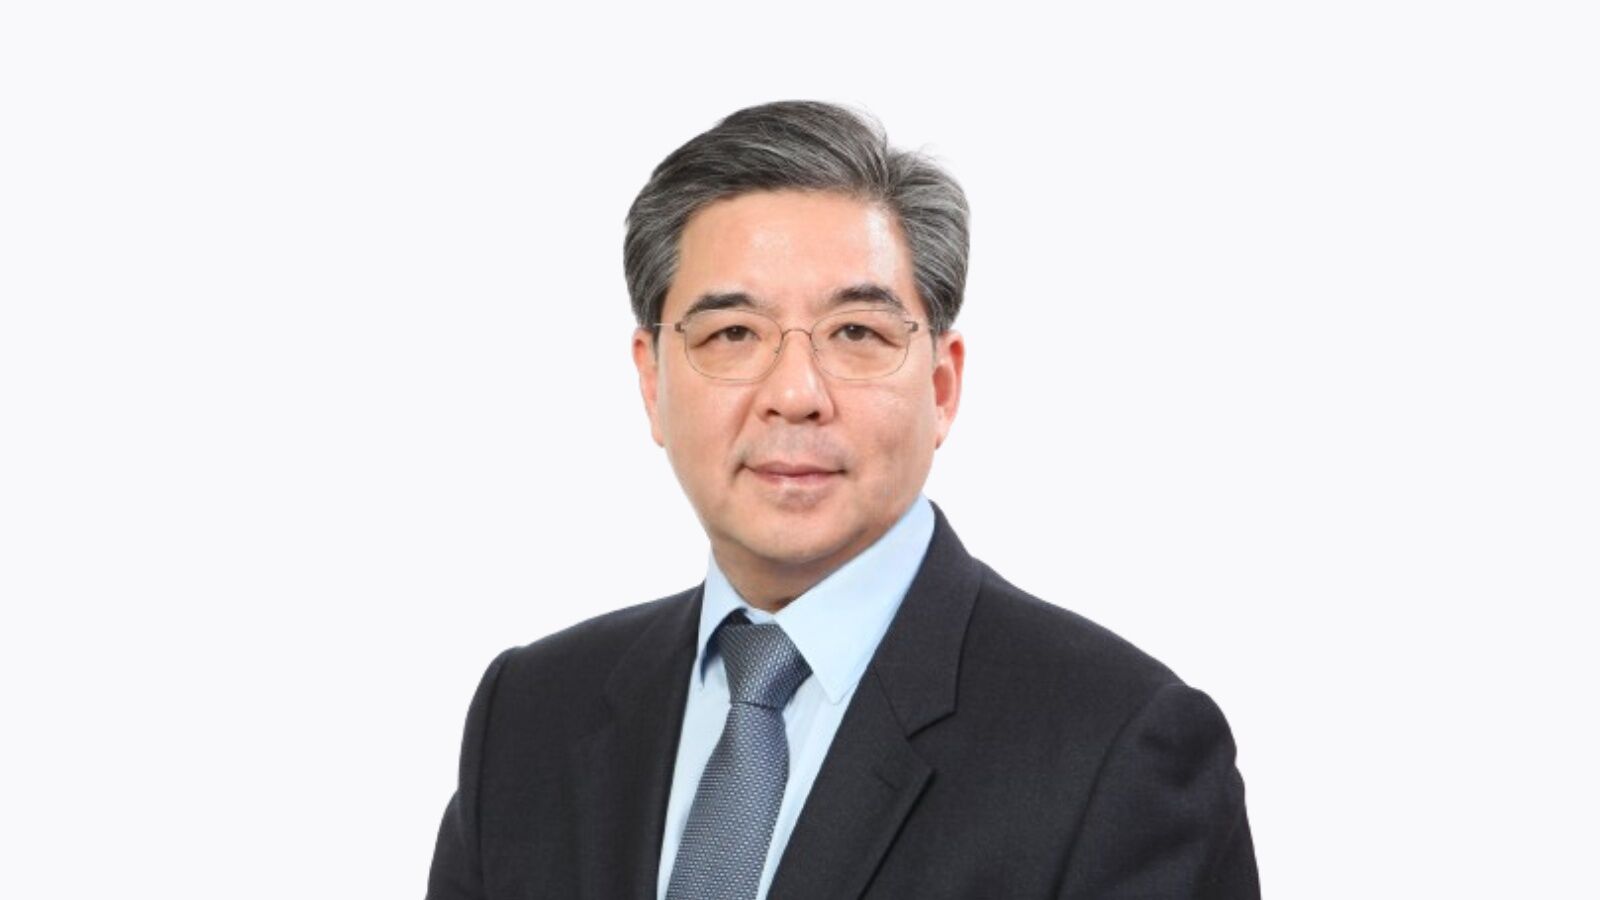 Jaehoon Chang, President and CEO of Hyundai Motor Company